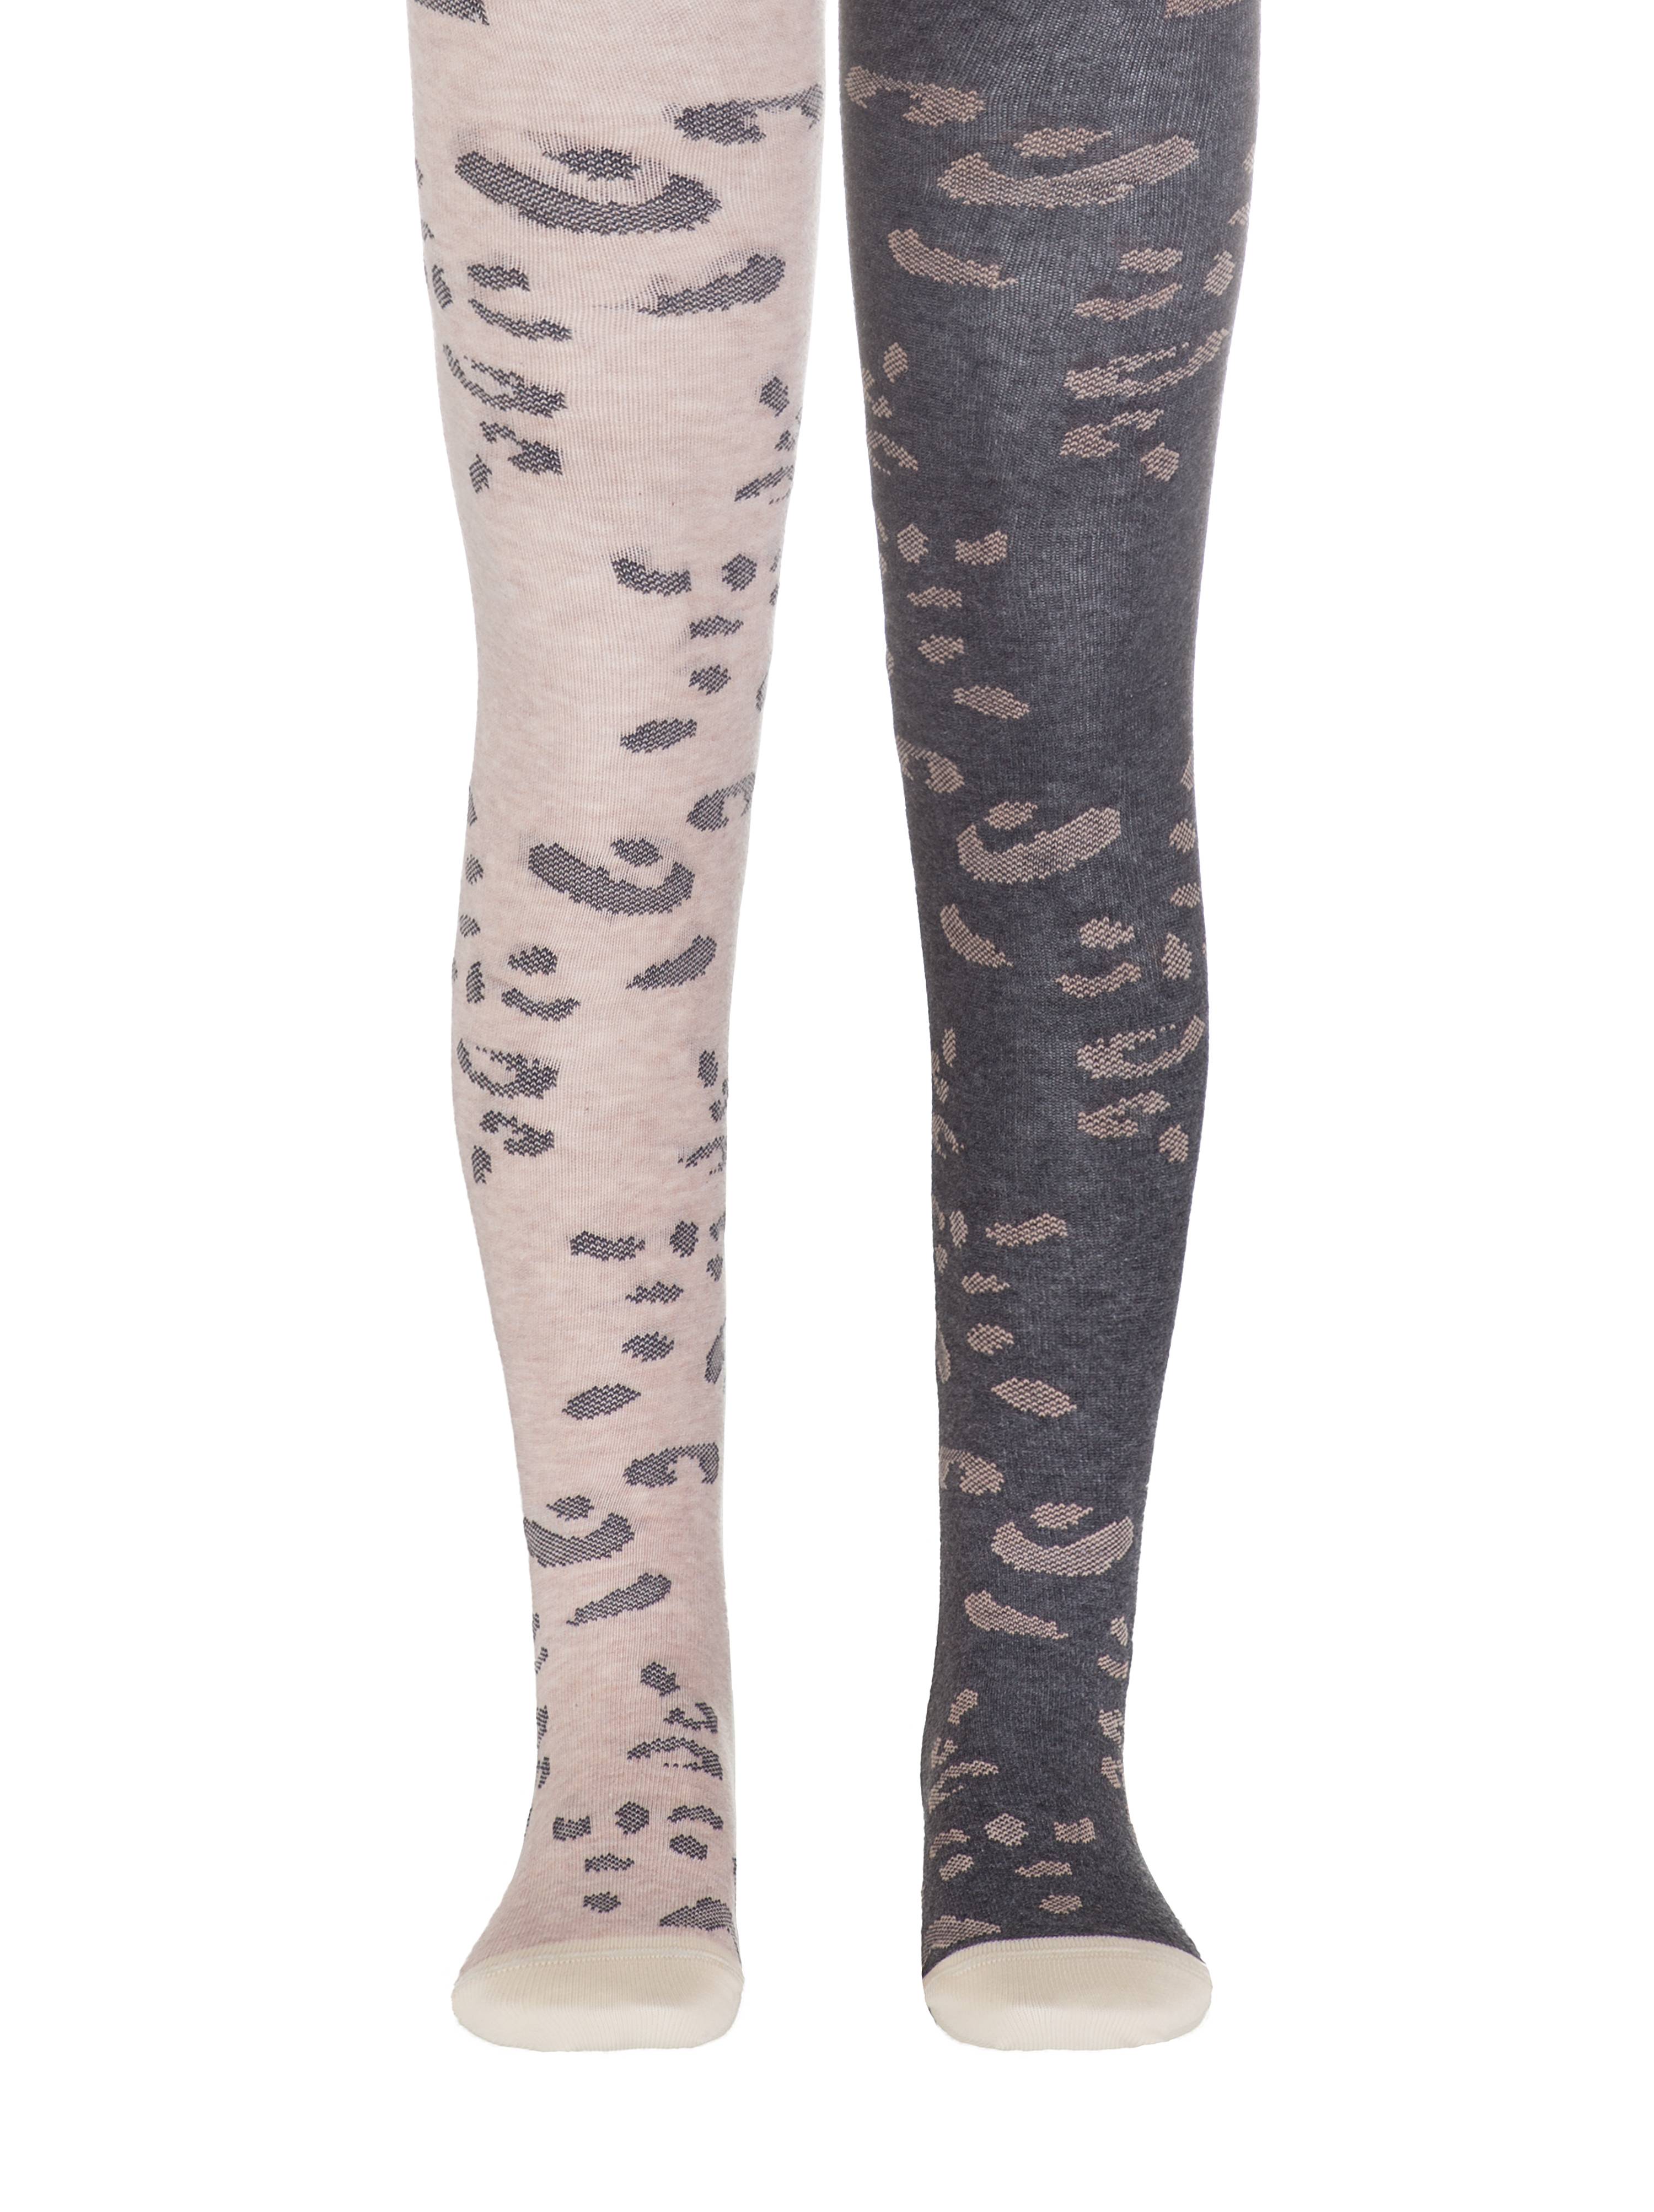 Хлопковые колготки TIP-TOP с леопардовым рисунком Conte ⭐️, цвет темно-серый-бежевый, размер 116-122